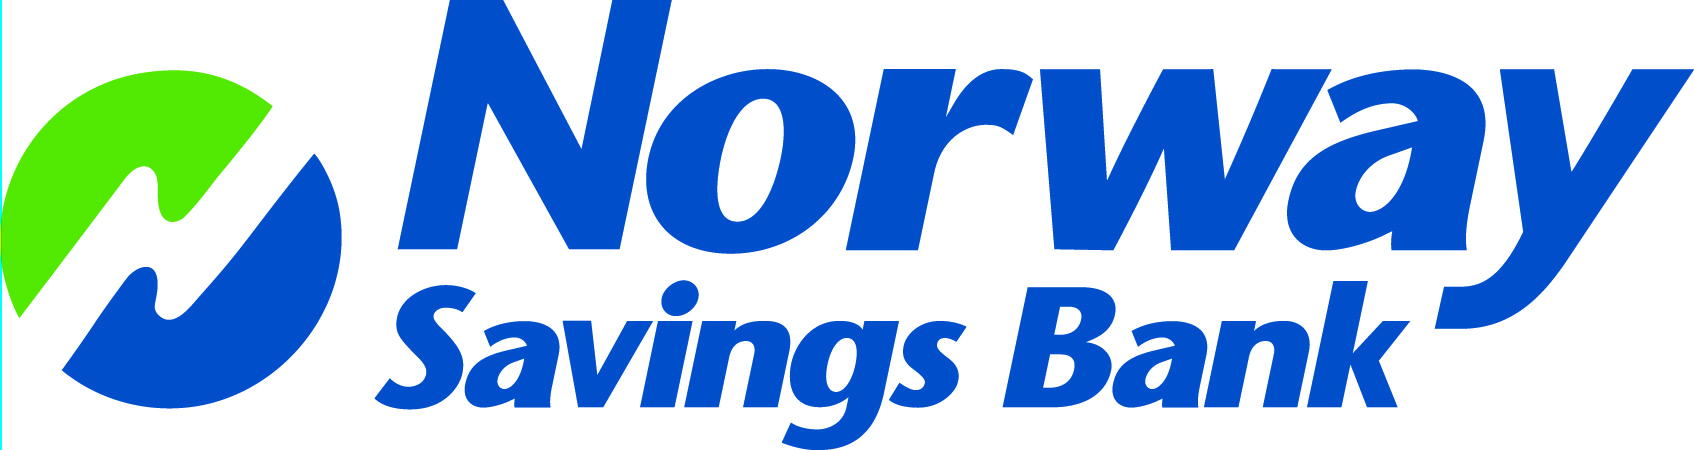 Norway Savings Bank – Standish